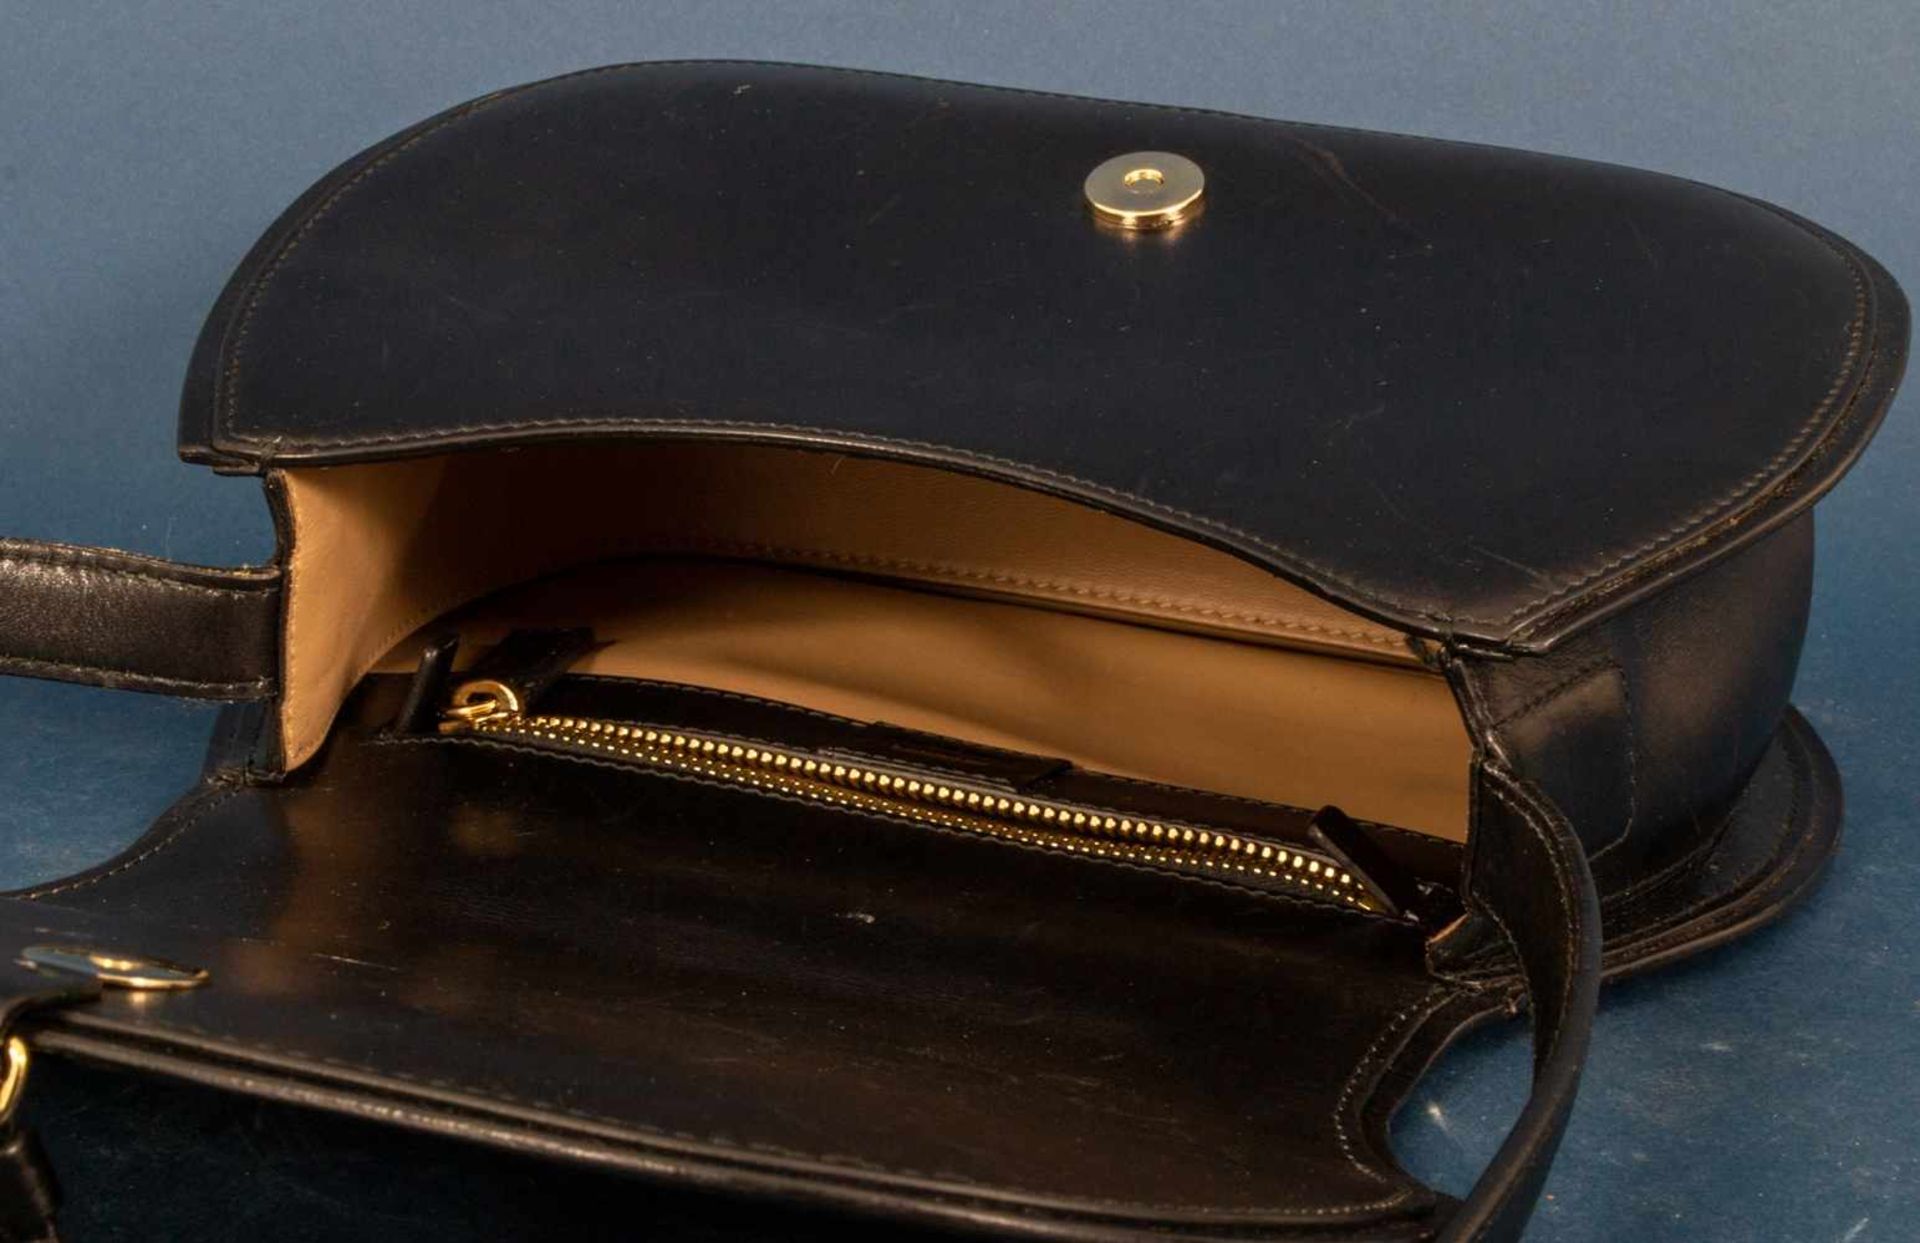 JIL SANDER - Damenhandtasche/Umhängetasche, schwarzes Leder mit polierten Messing-Beschlägen/ - Image 5 of 9